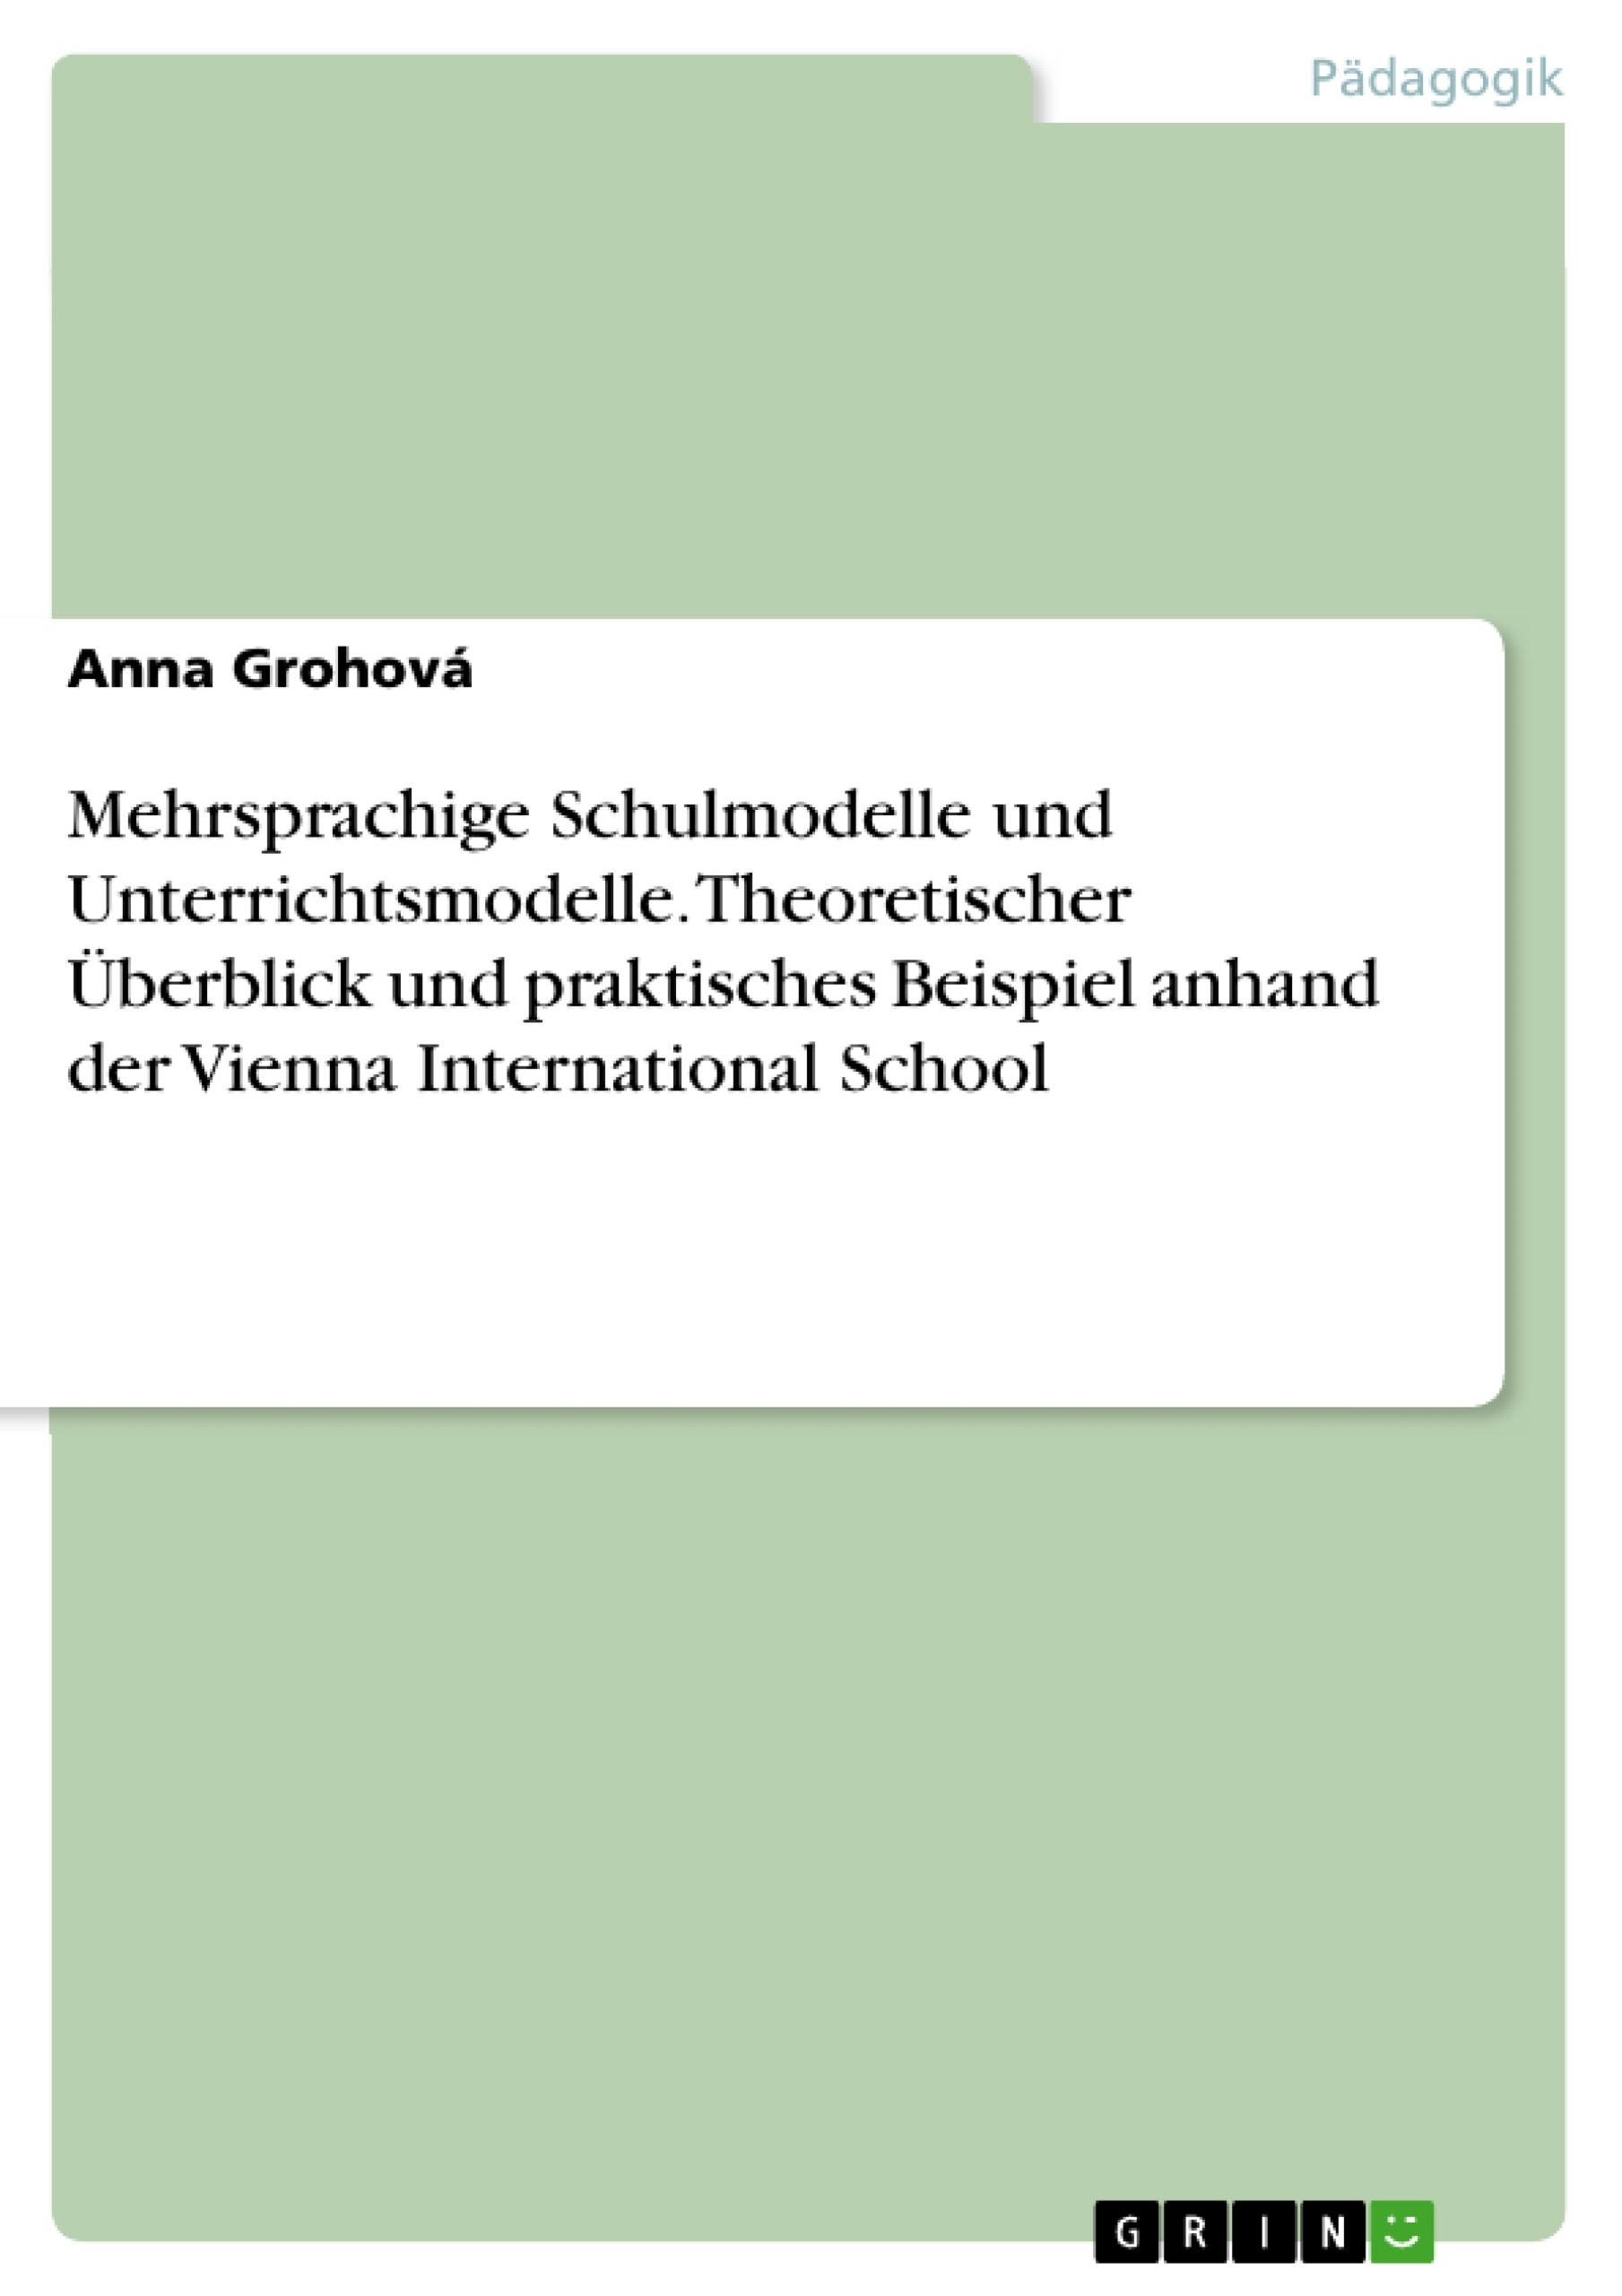 Título: Mehrsprachige Schulmodelle und Unterrichtsmodelle. Theoretischer Überblick und praktisches Beispiel anhand der Vienna International School